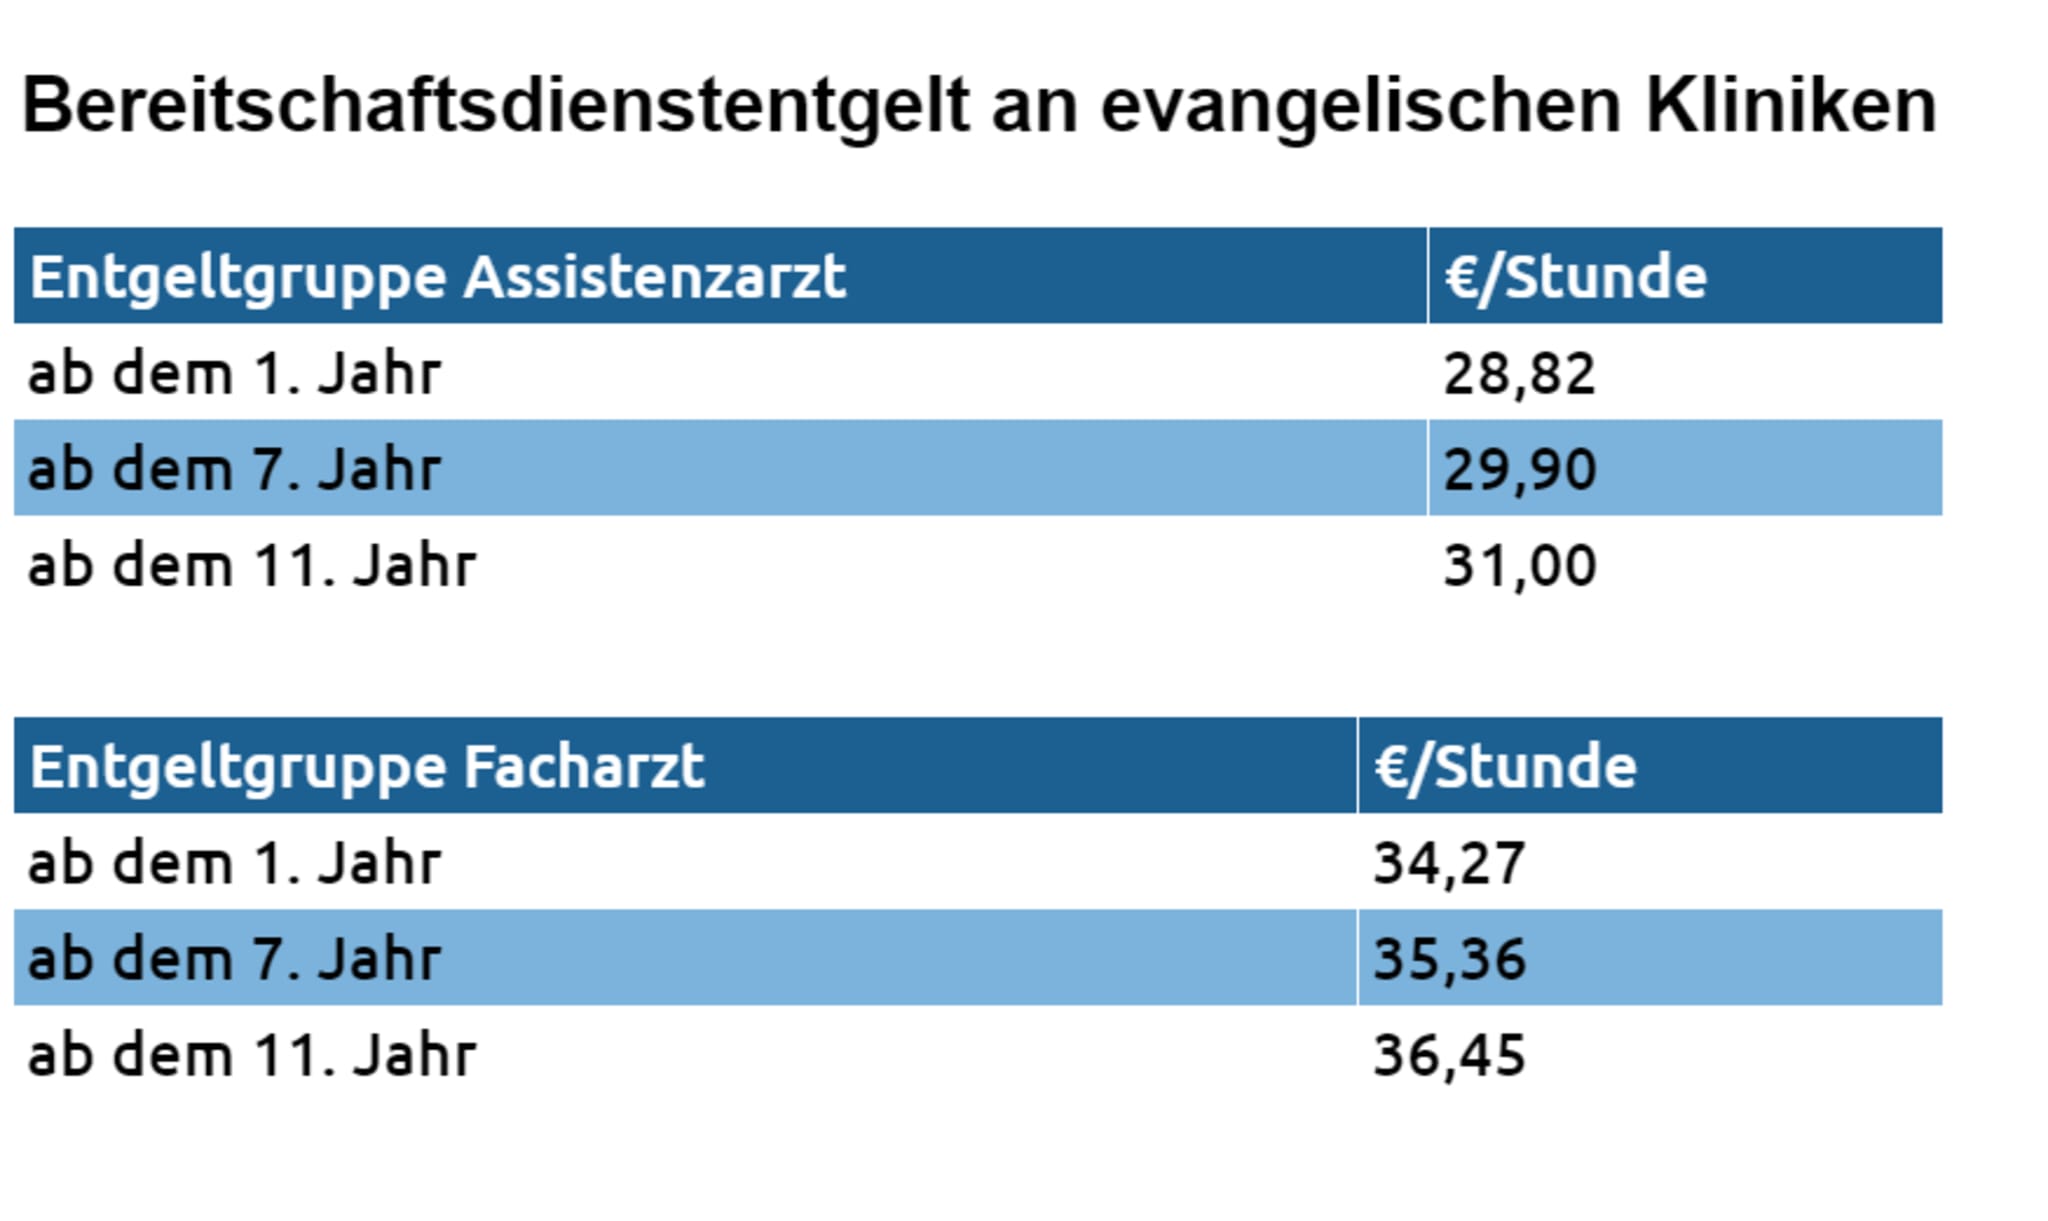 Bereitschaftsdienstentgelt an evangelischen Kliniken für Assistenz- und Fachärzte. Die Zahlen gelten für Einrichtungen, die die Arbeitsvertragsrichtlinien der Diakonie Deutschland anwenden.